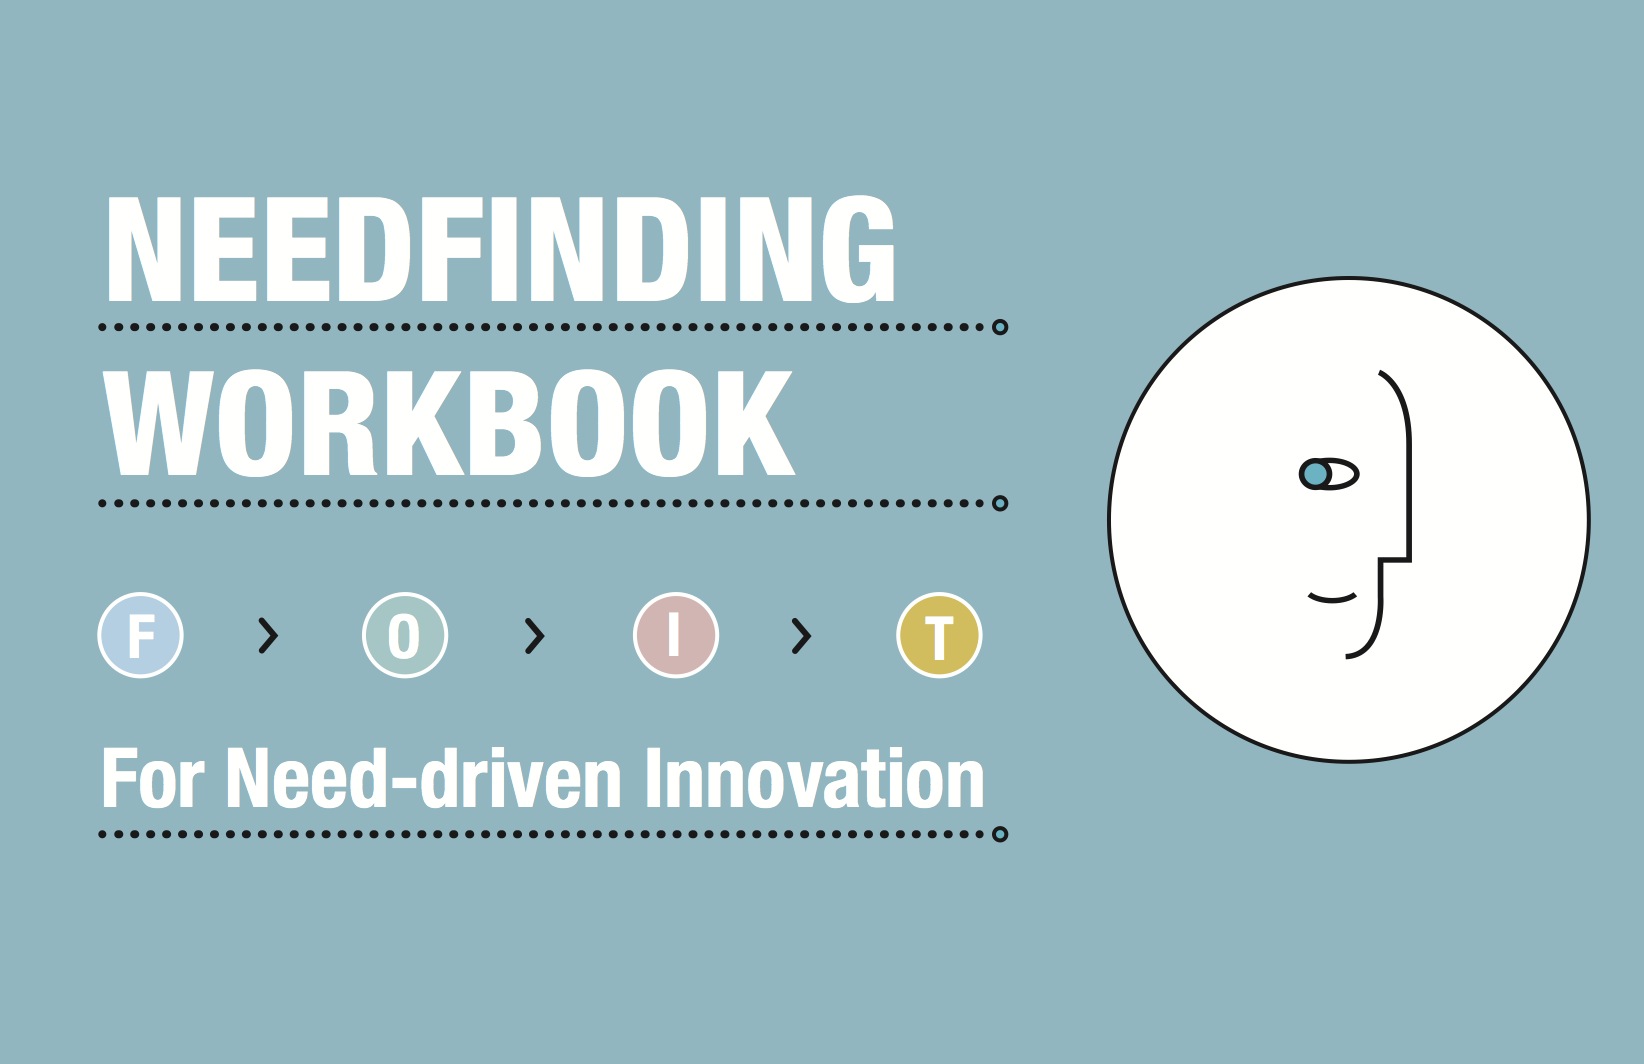 Needfinding workbook